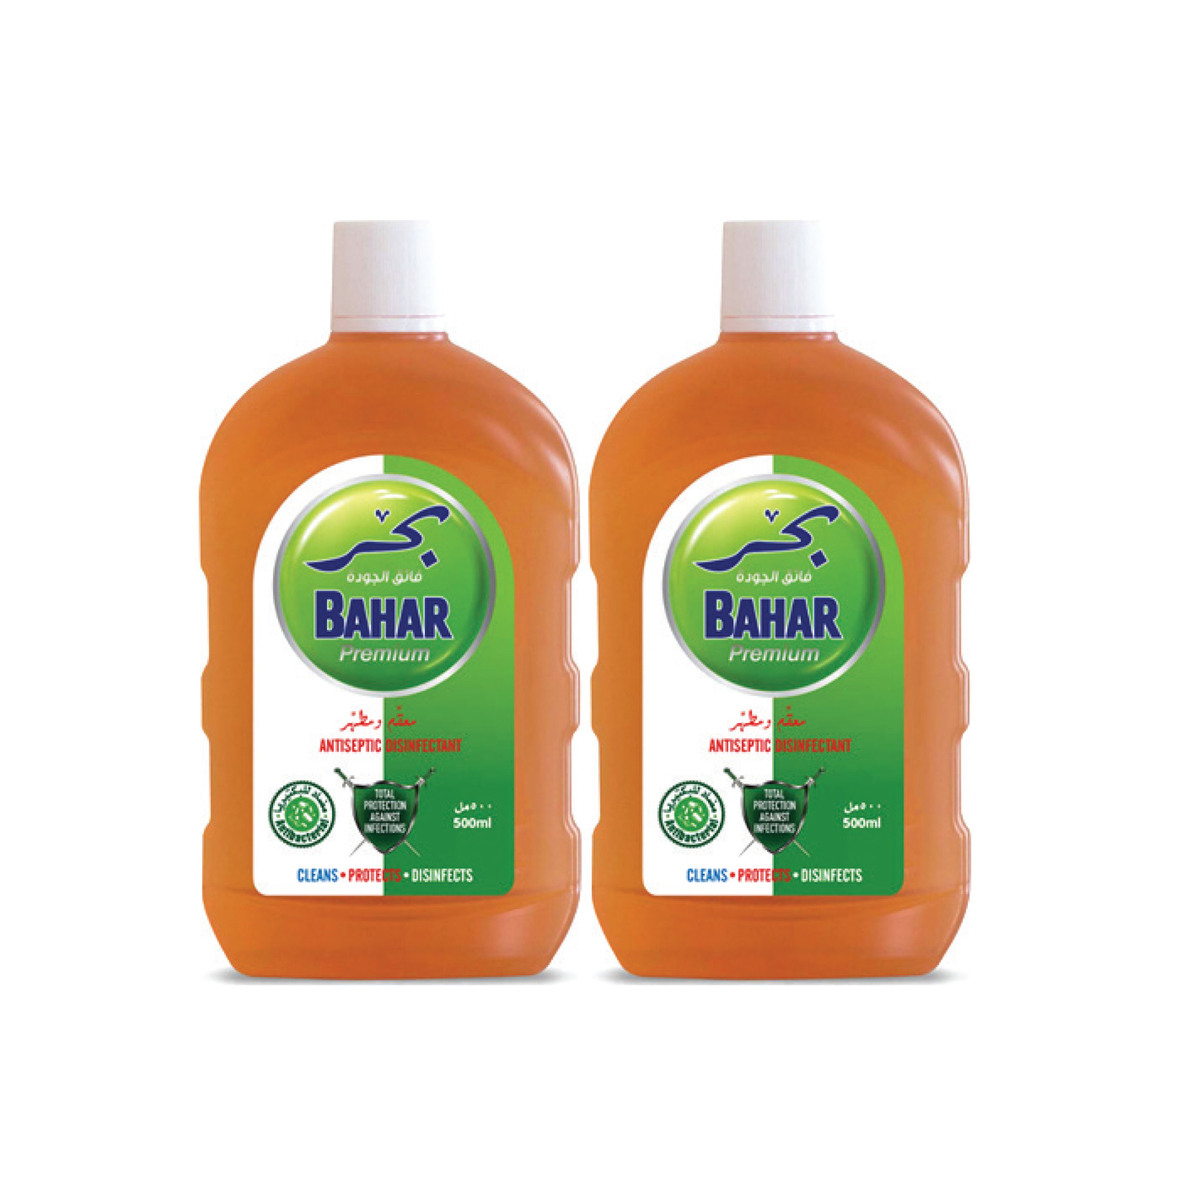 Bahar Premium Antiseptic Disinfectant 2 x 500ml